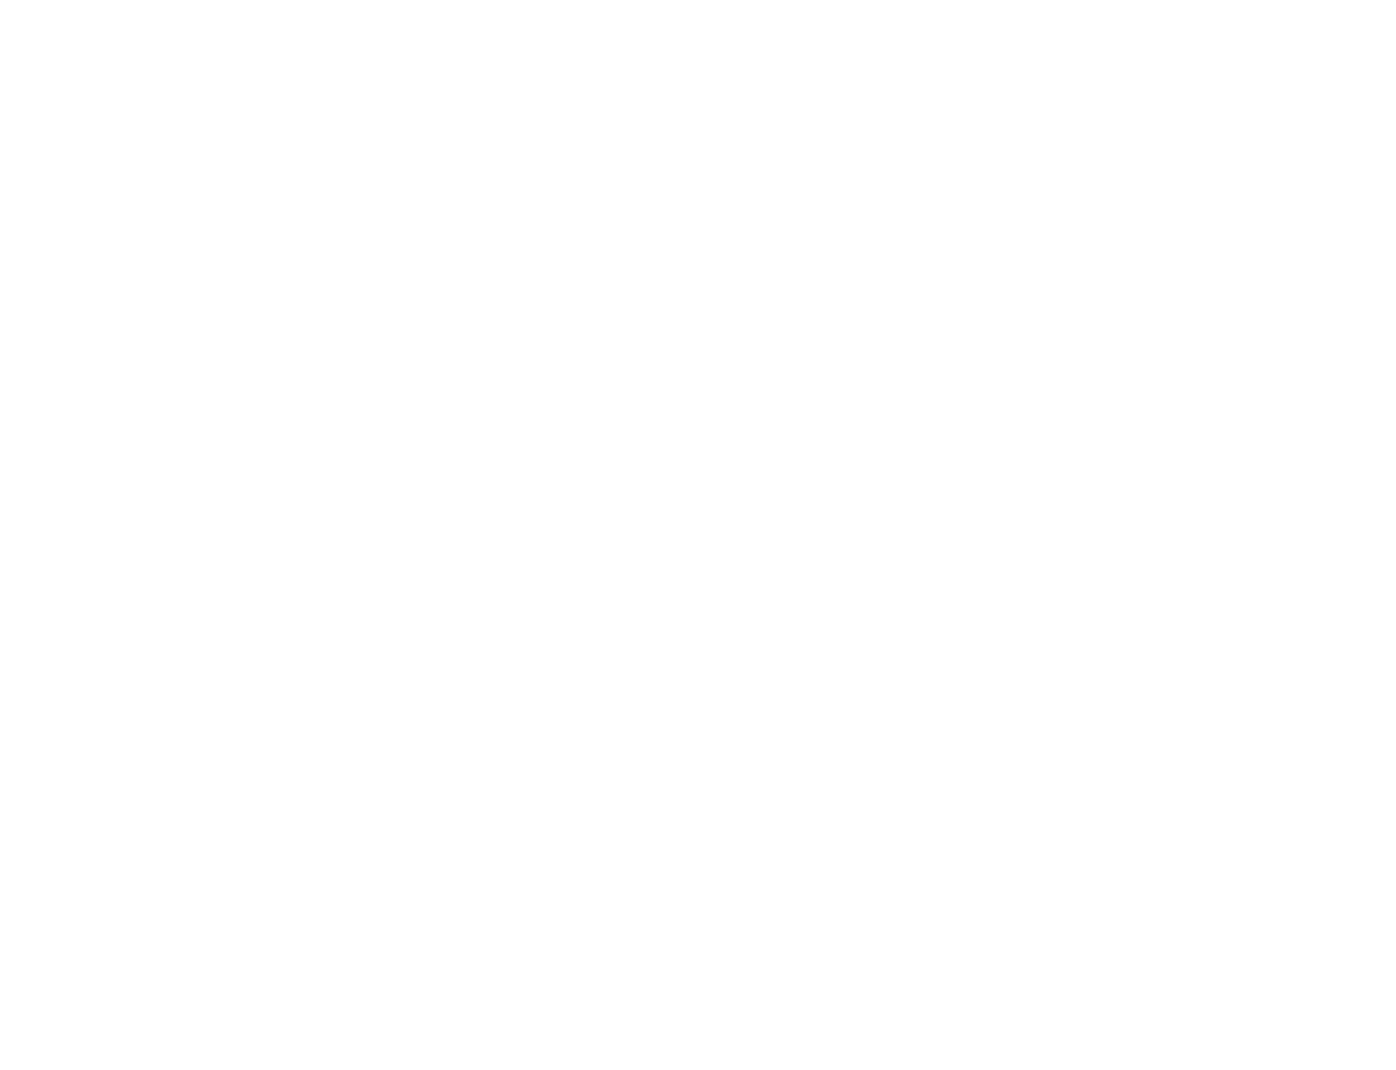 Discord logo pour fonds sombres (PNG transparent)